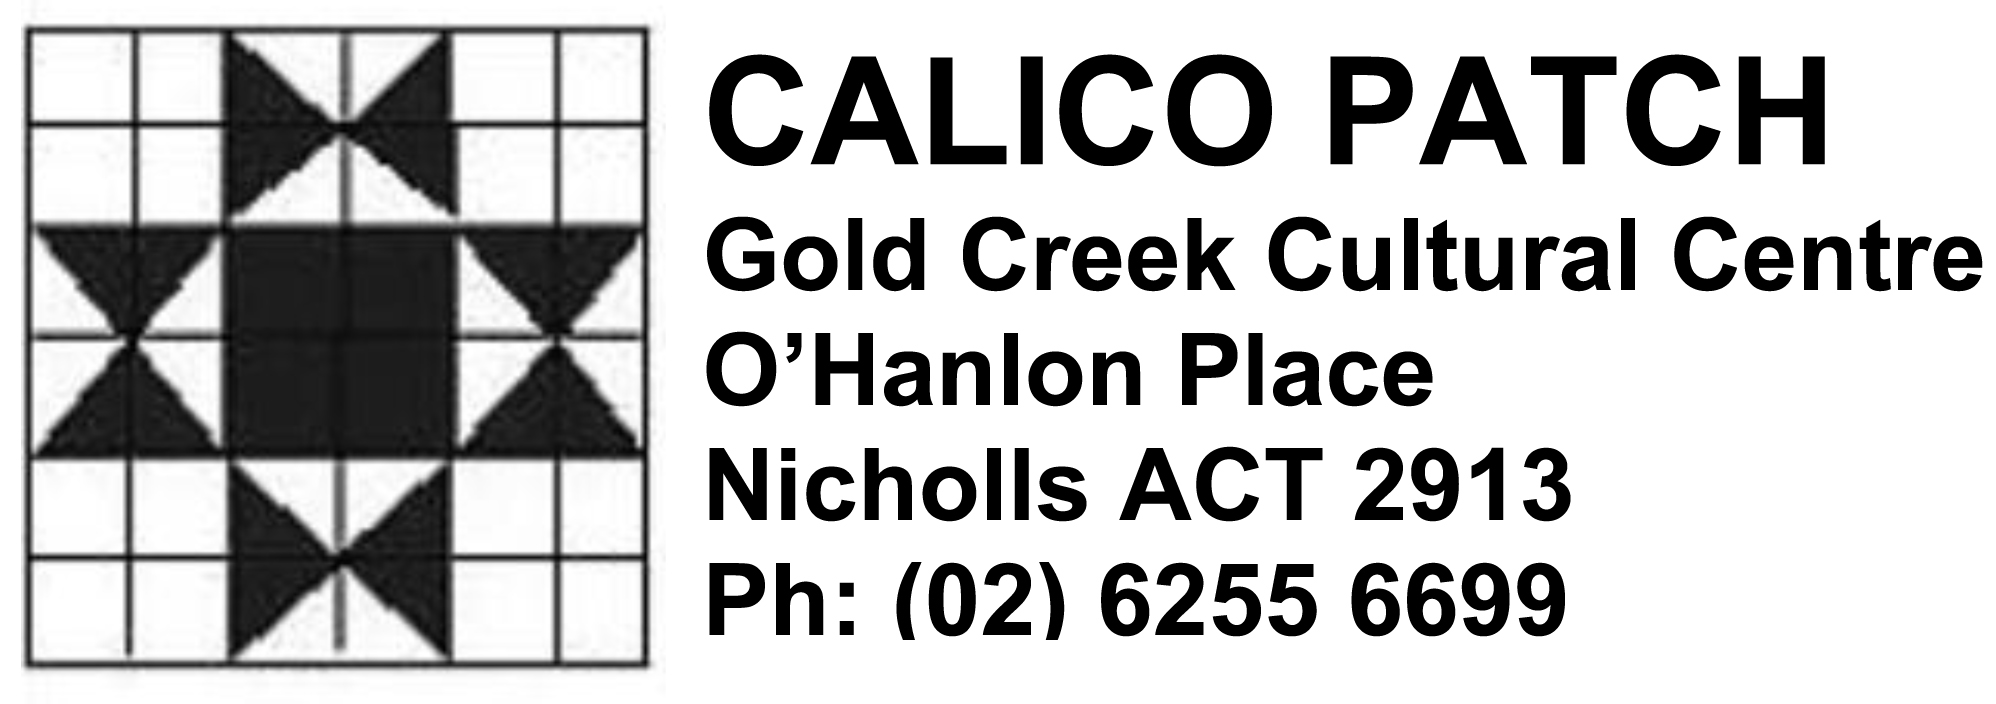 Calico Patch logo